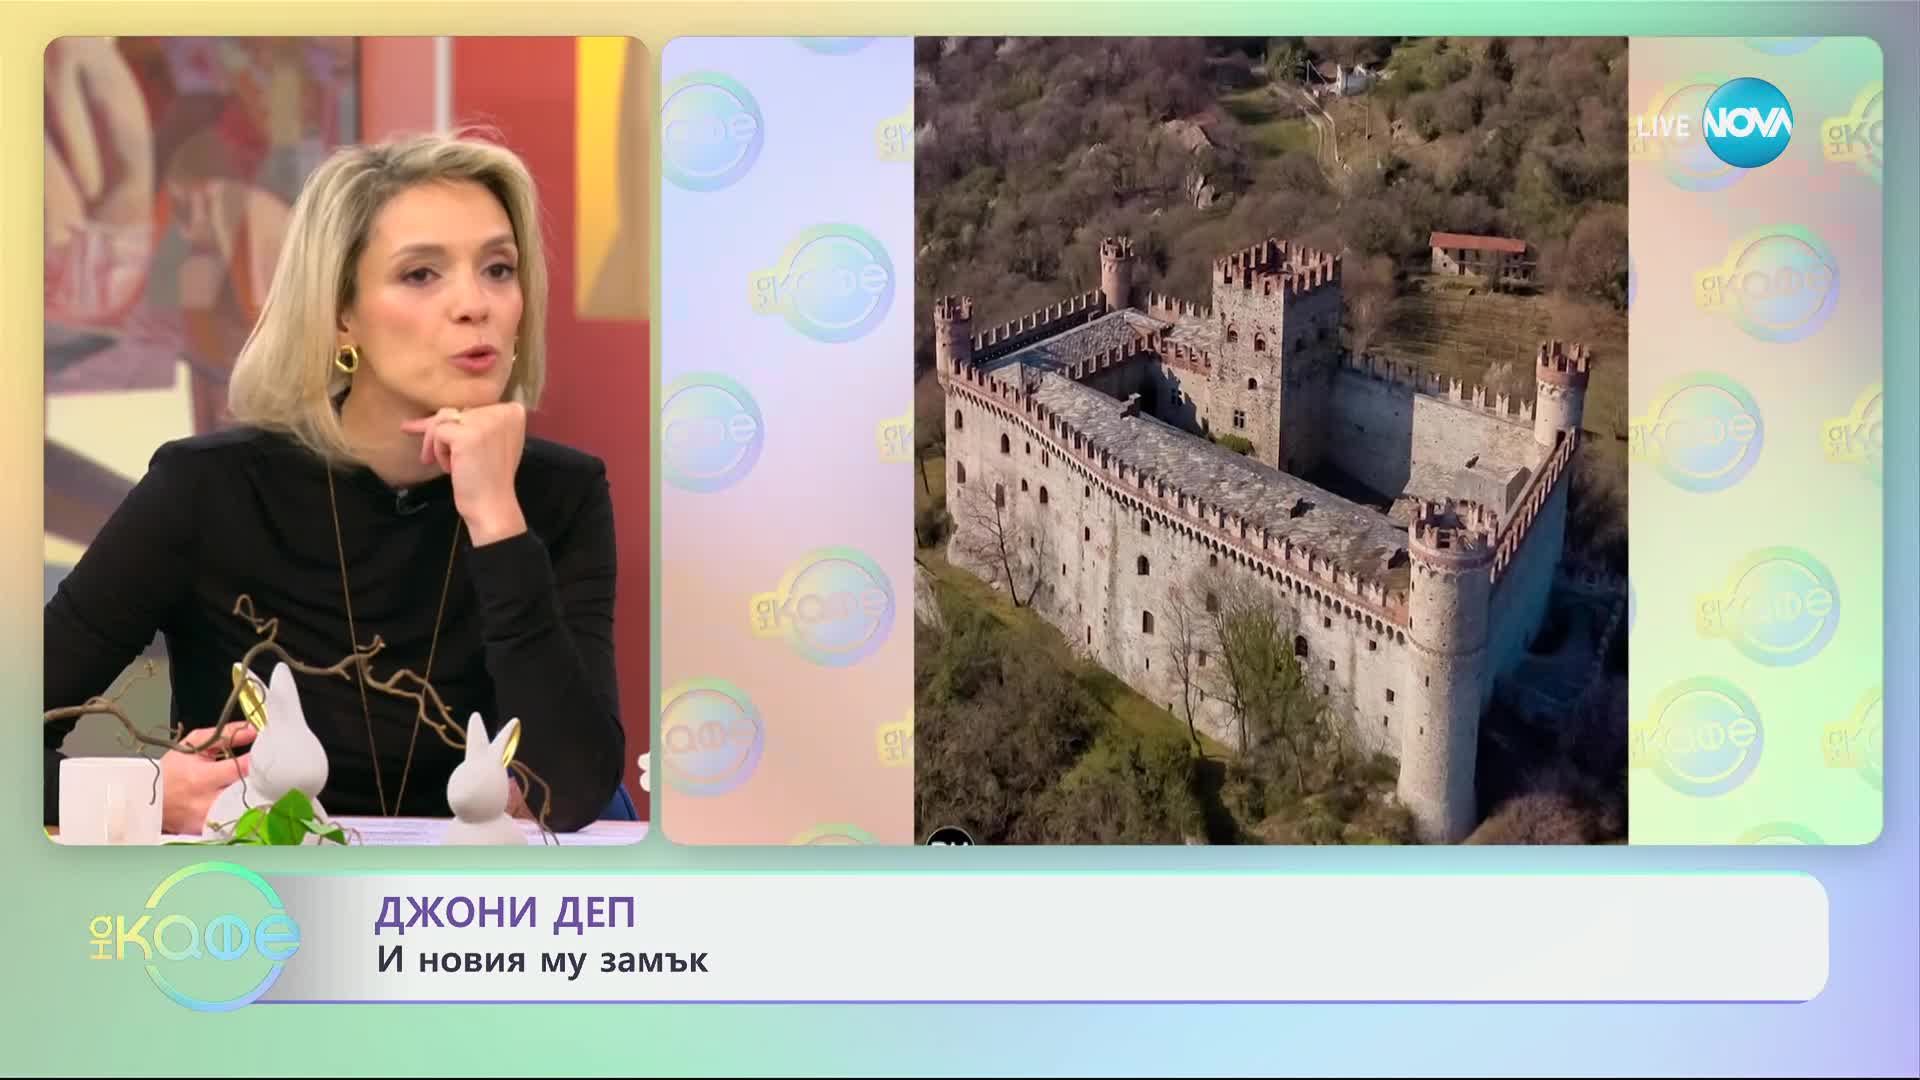 Джони Деп иска да си купи средновековен замък в Италия